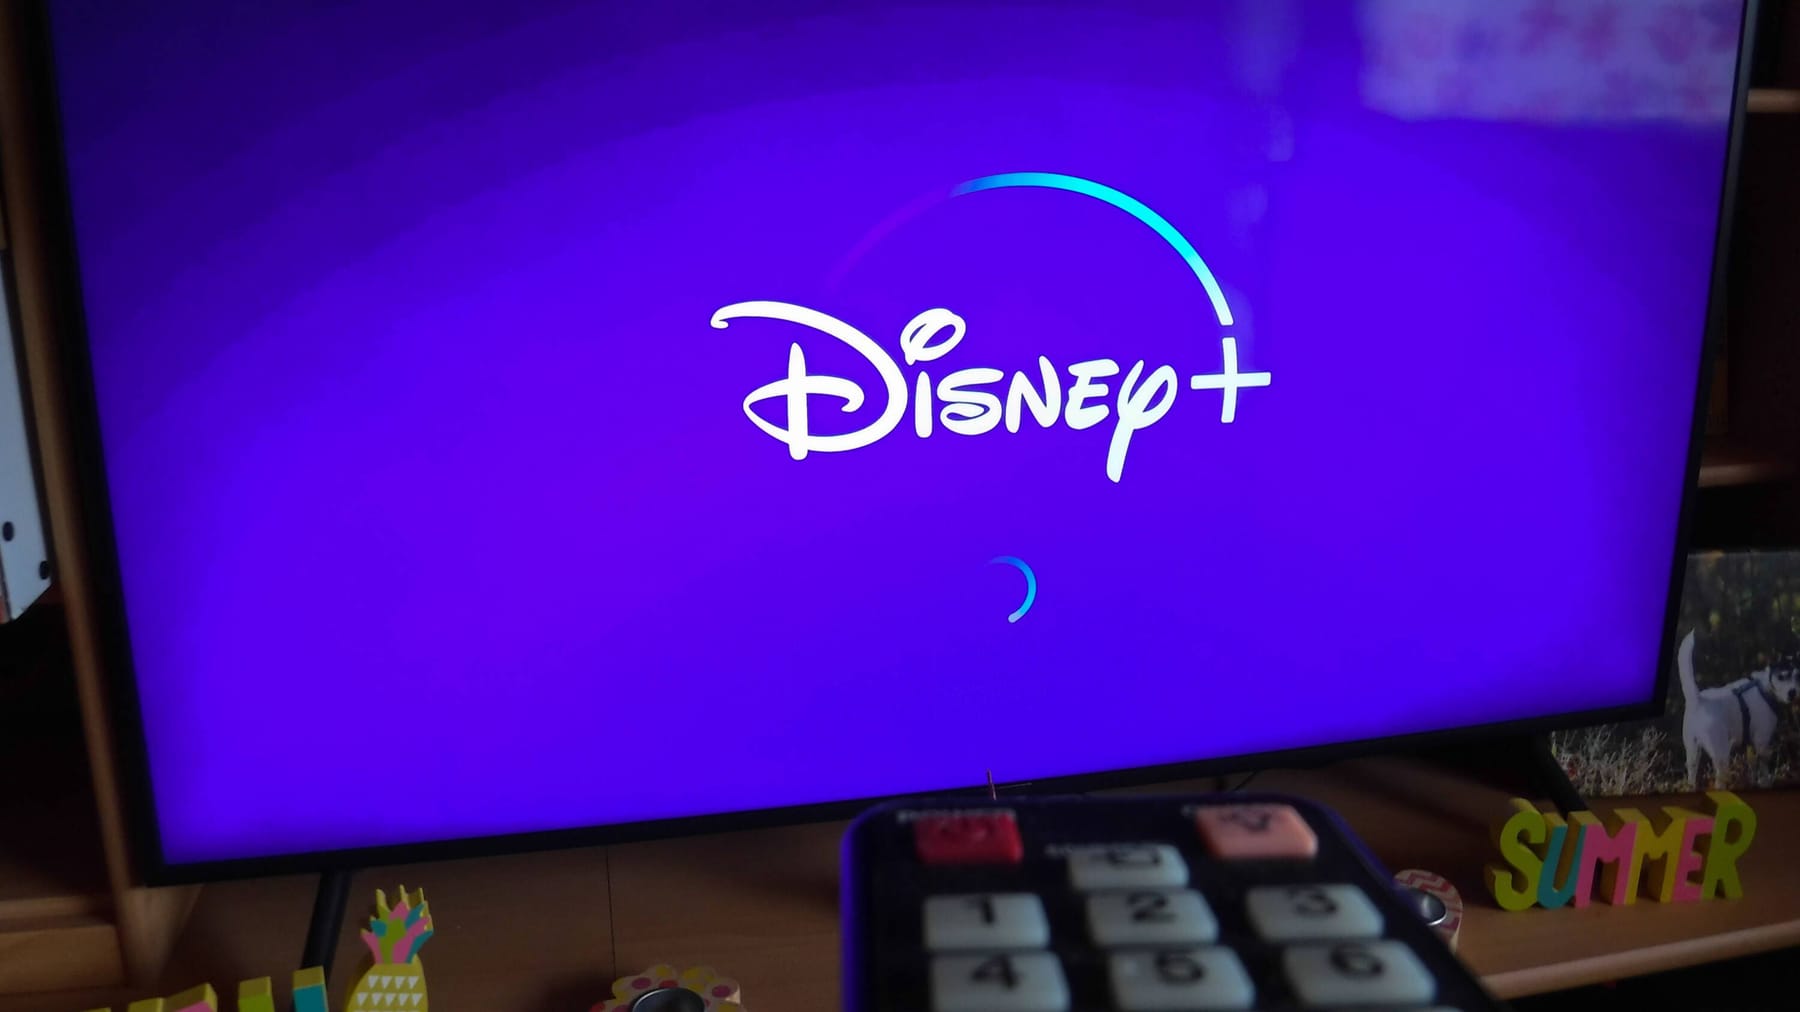 Telekom menawarkan langganan Disney+ tahunan untuk pelanggan seluler